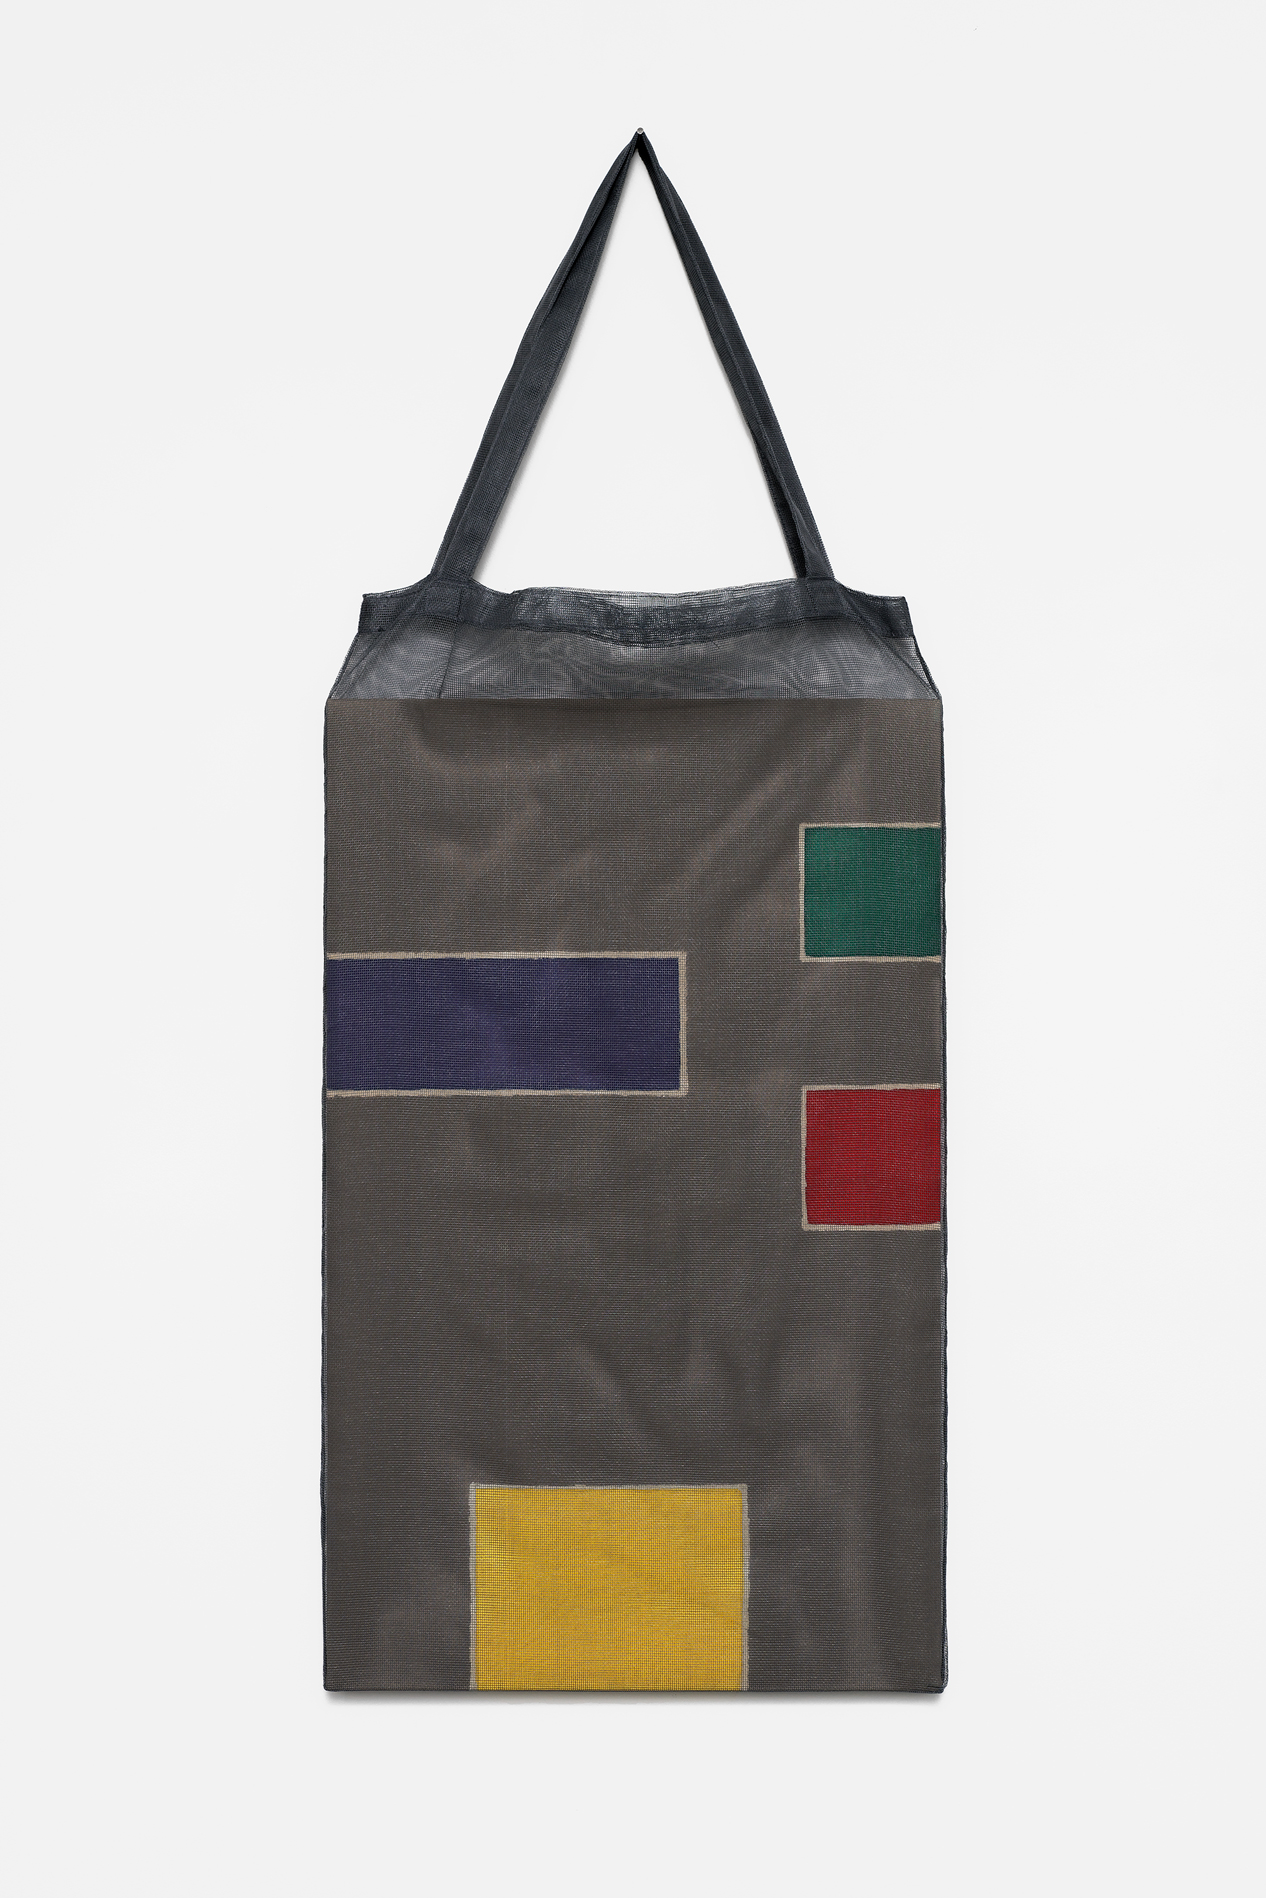 , 2018, Pigments on cotton fabric [batik] and bag, 118 x 47 x 3 cm, , unique artwork, Photo: Aurélien Mole